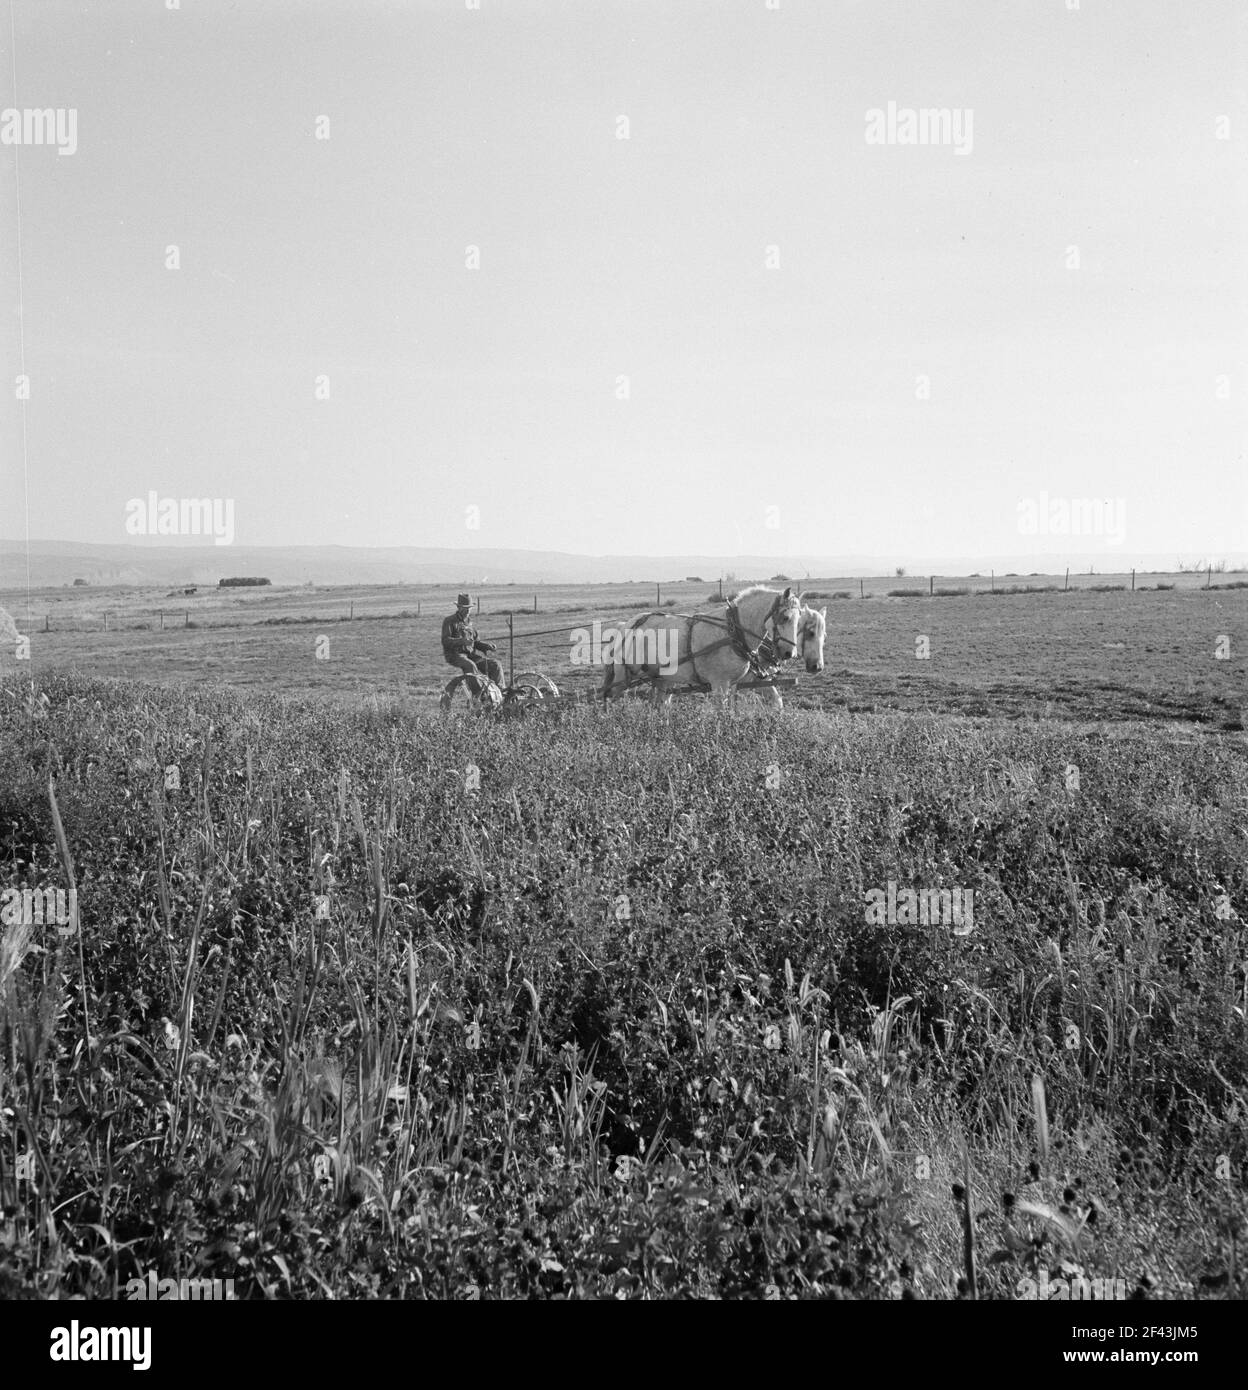 Herr Roberts erntet Rotklee auf seiner 40 Hektar großen Farm. Malheur County, Oregon. Oktober 1939. Foto von Dorothea lange. Stockfoto